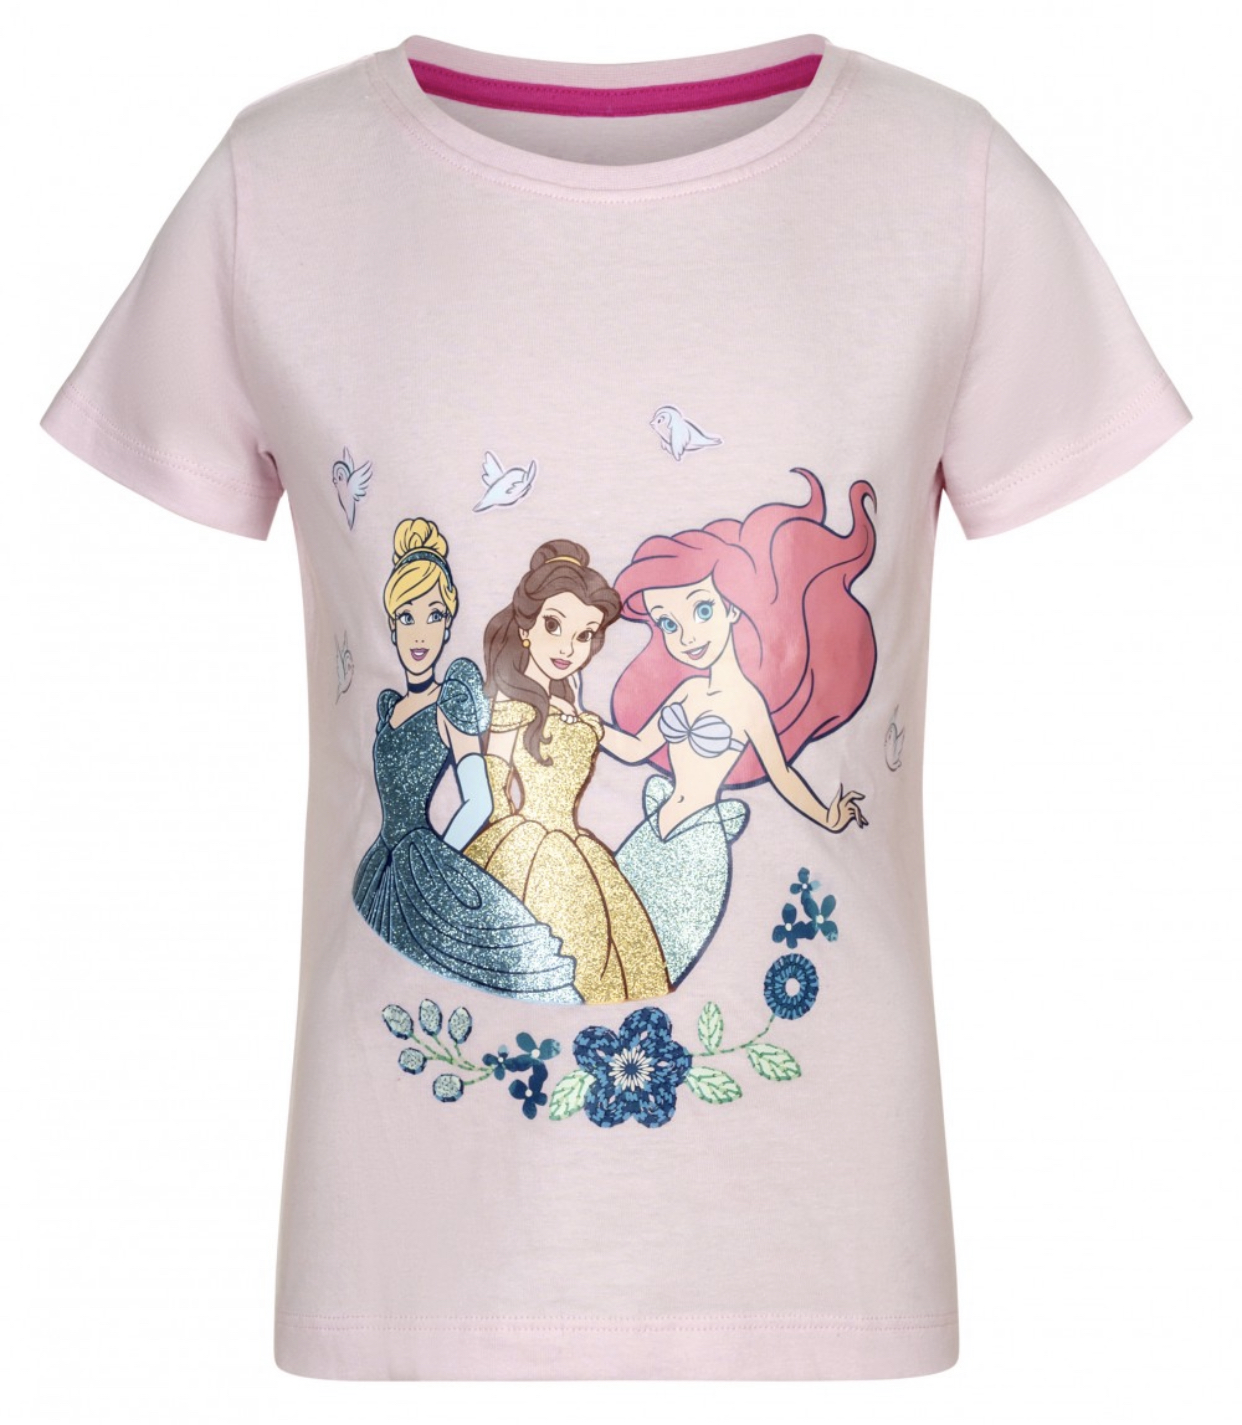 Disney Prinsess t-shirt från Smallstars.se